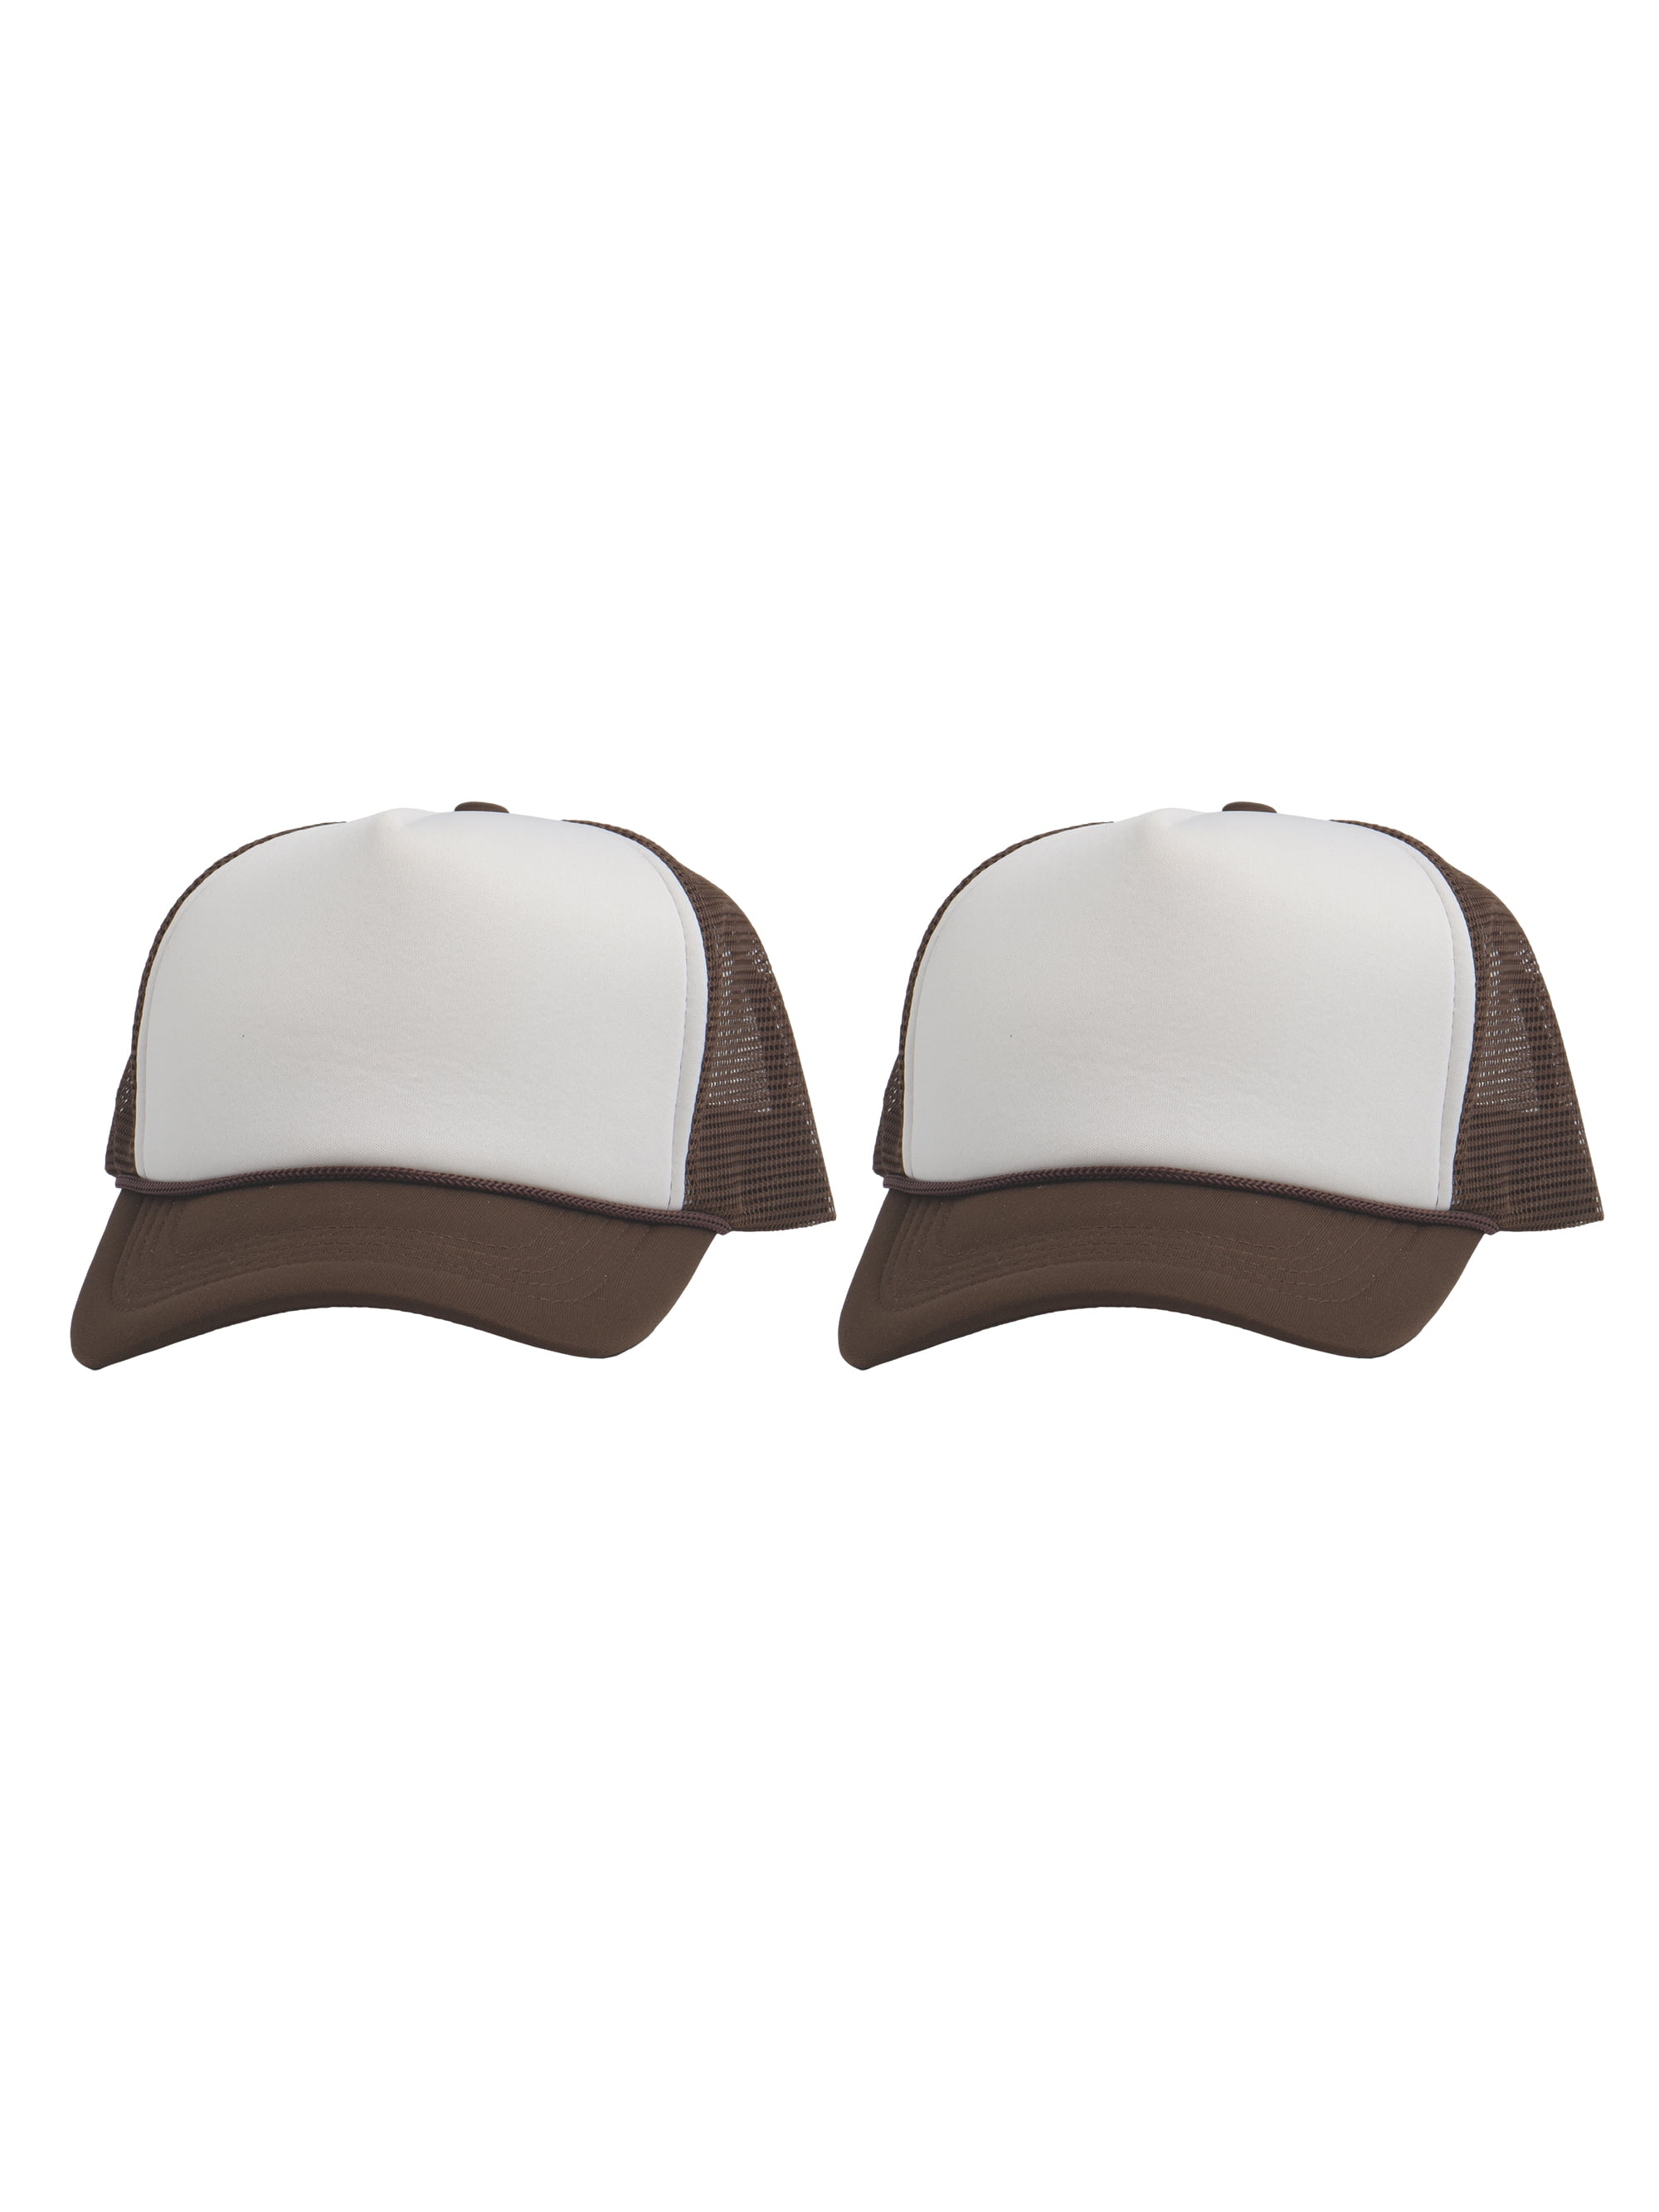 Top Headwear Men's Blank Rope Trucker Foam Mesh Plain Hats, 2PC White/Red 